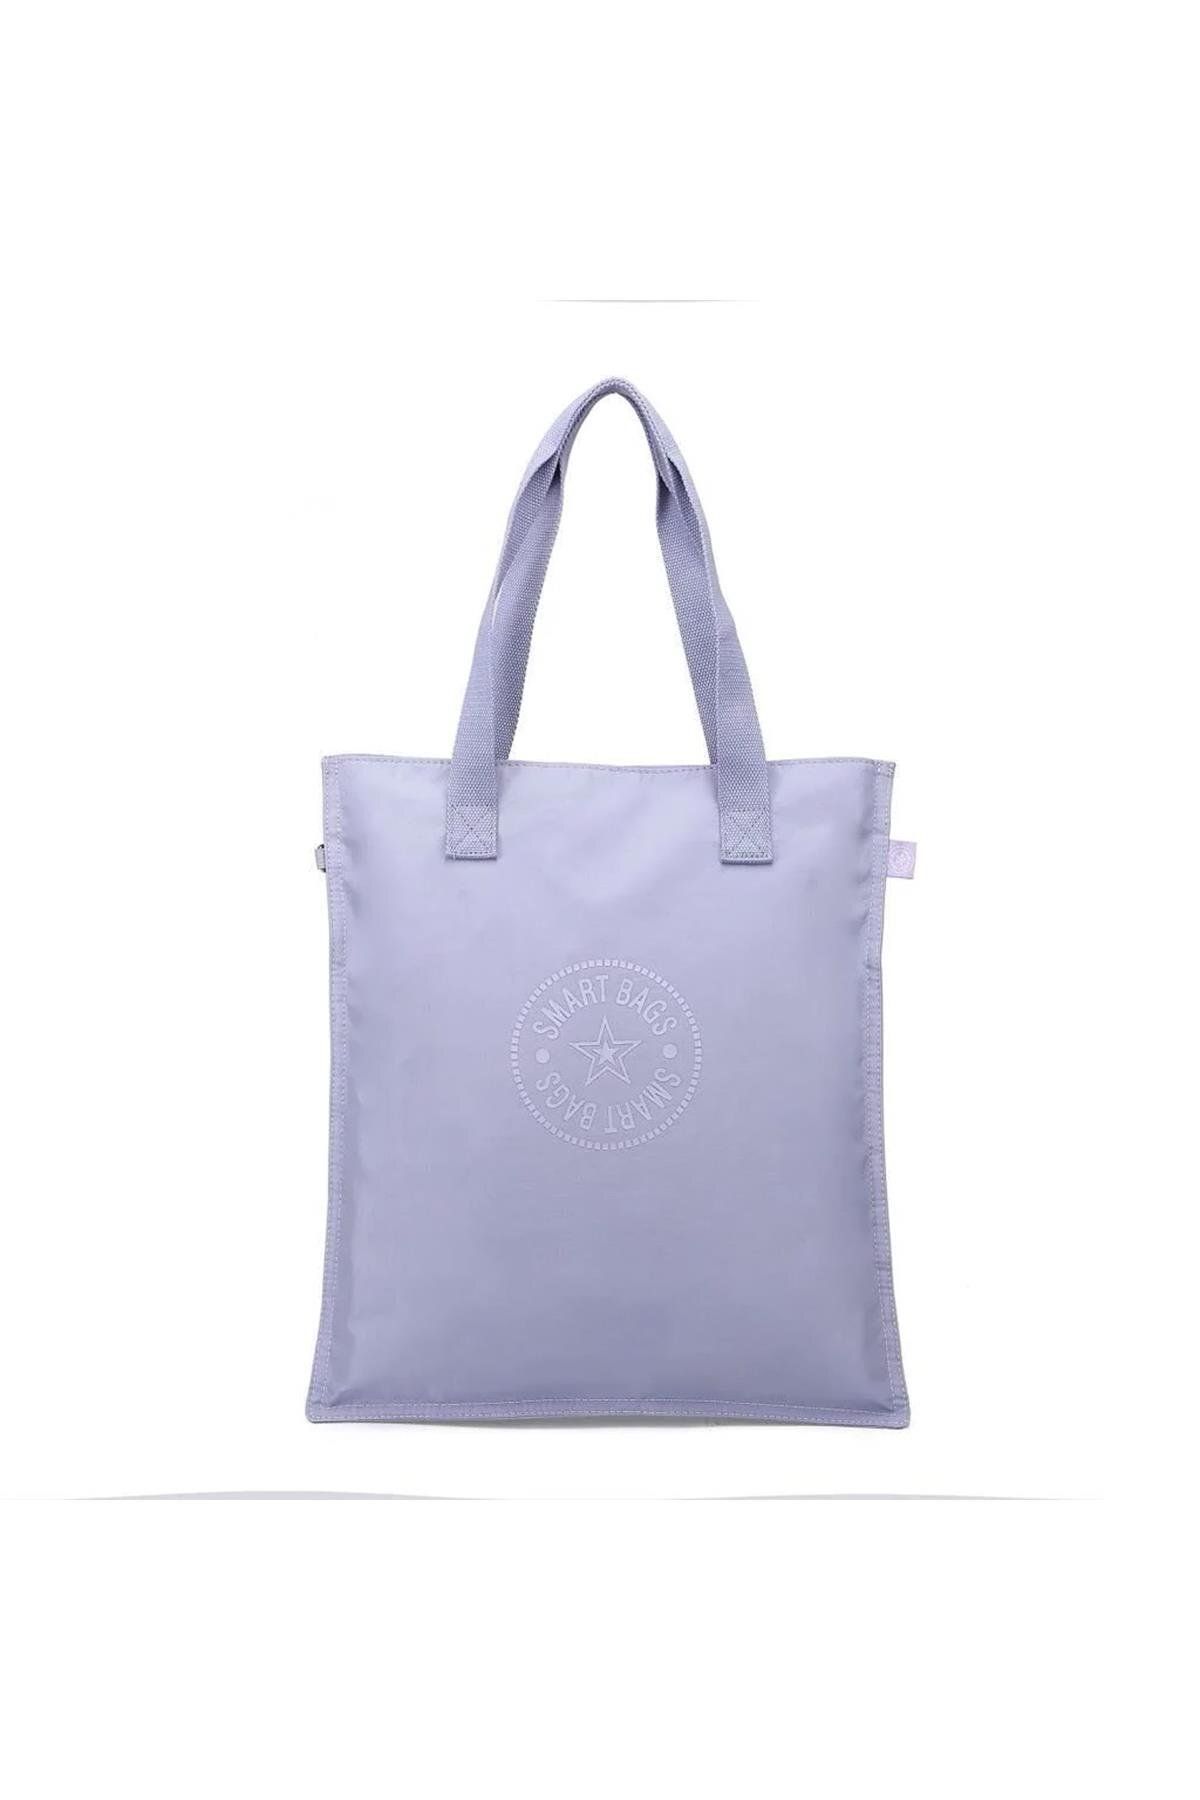 Smart Bags Smartbags Krinkıl Kumaş Kadın Omuz Çantası 2022-3076k Lila